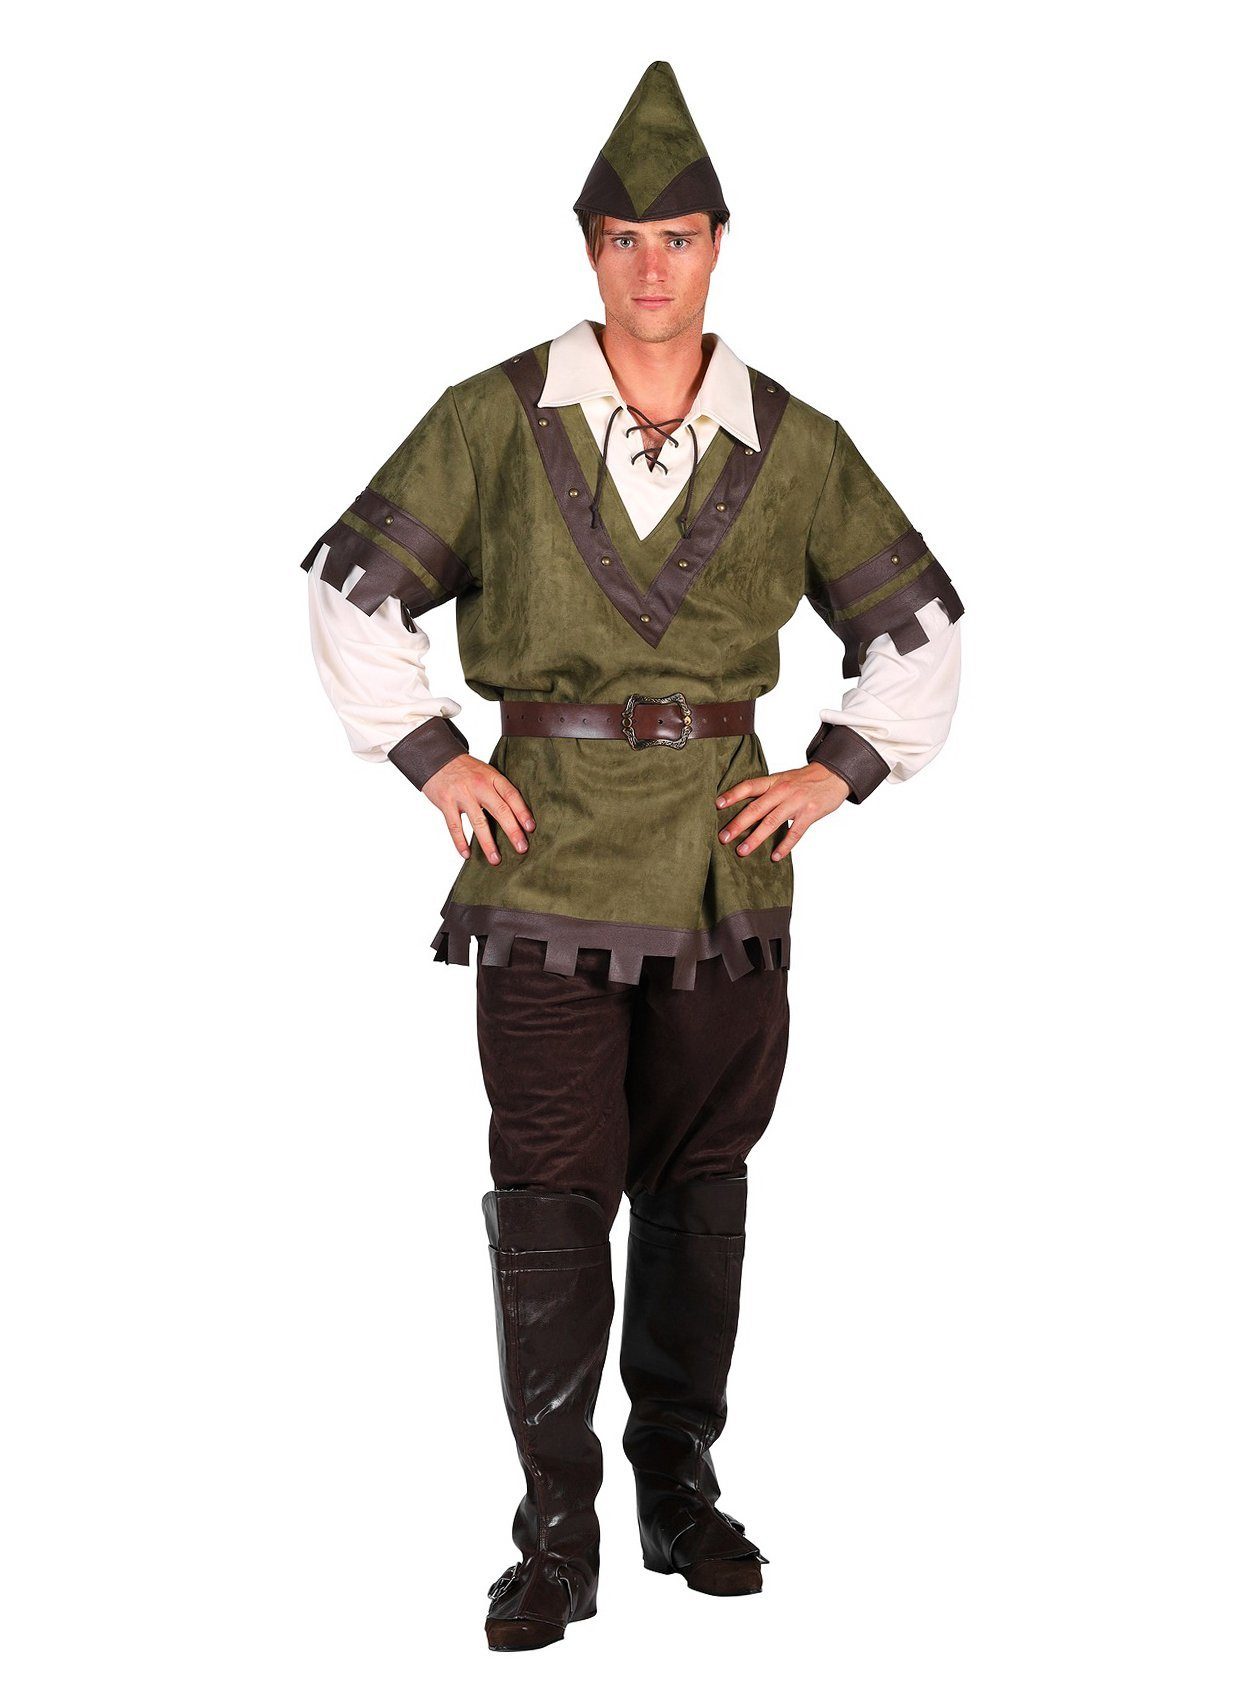 thetru Kostüm Robin Hood Kostüm grün, Der Held von Sherwood Forest im klassischen Look